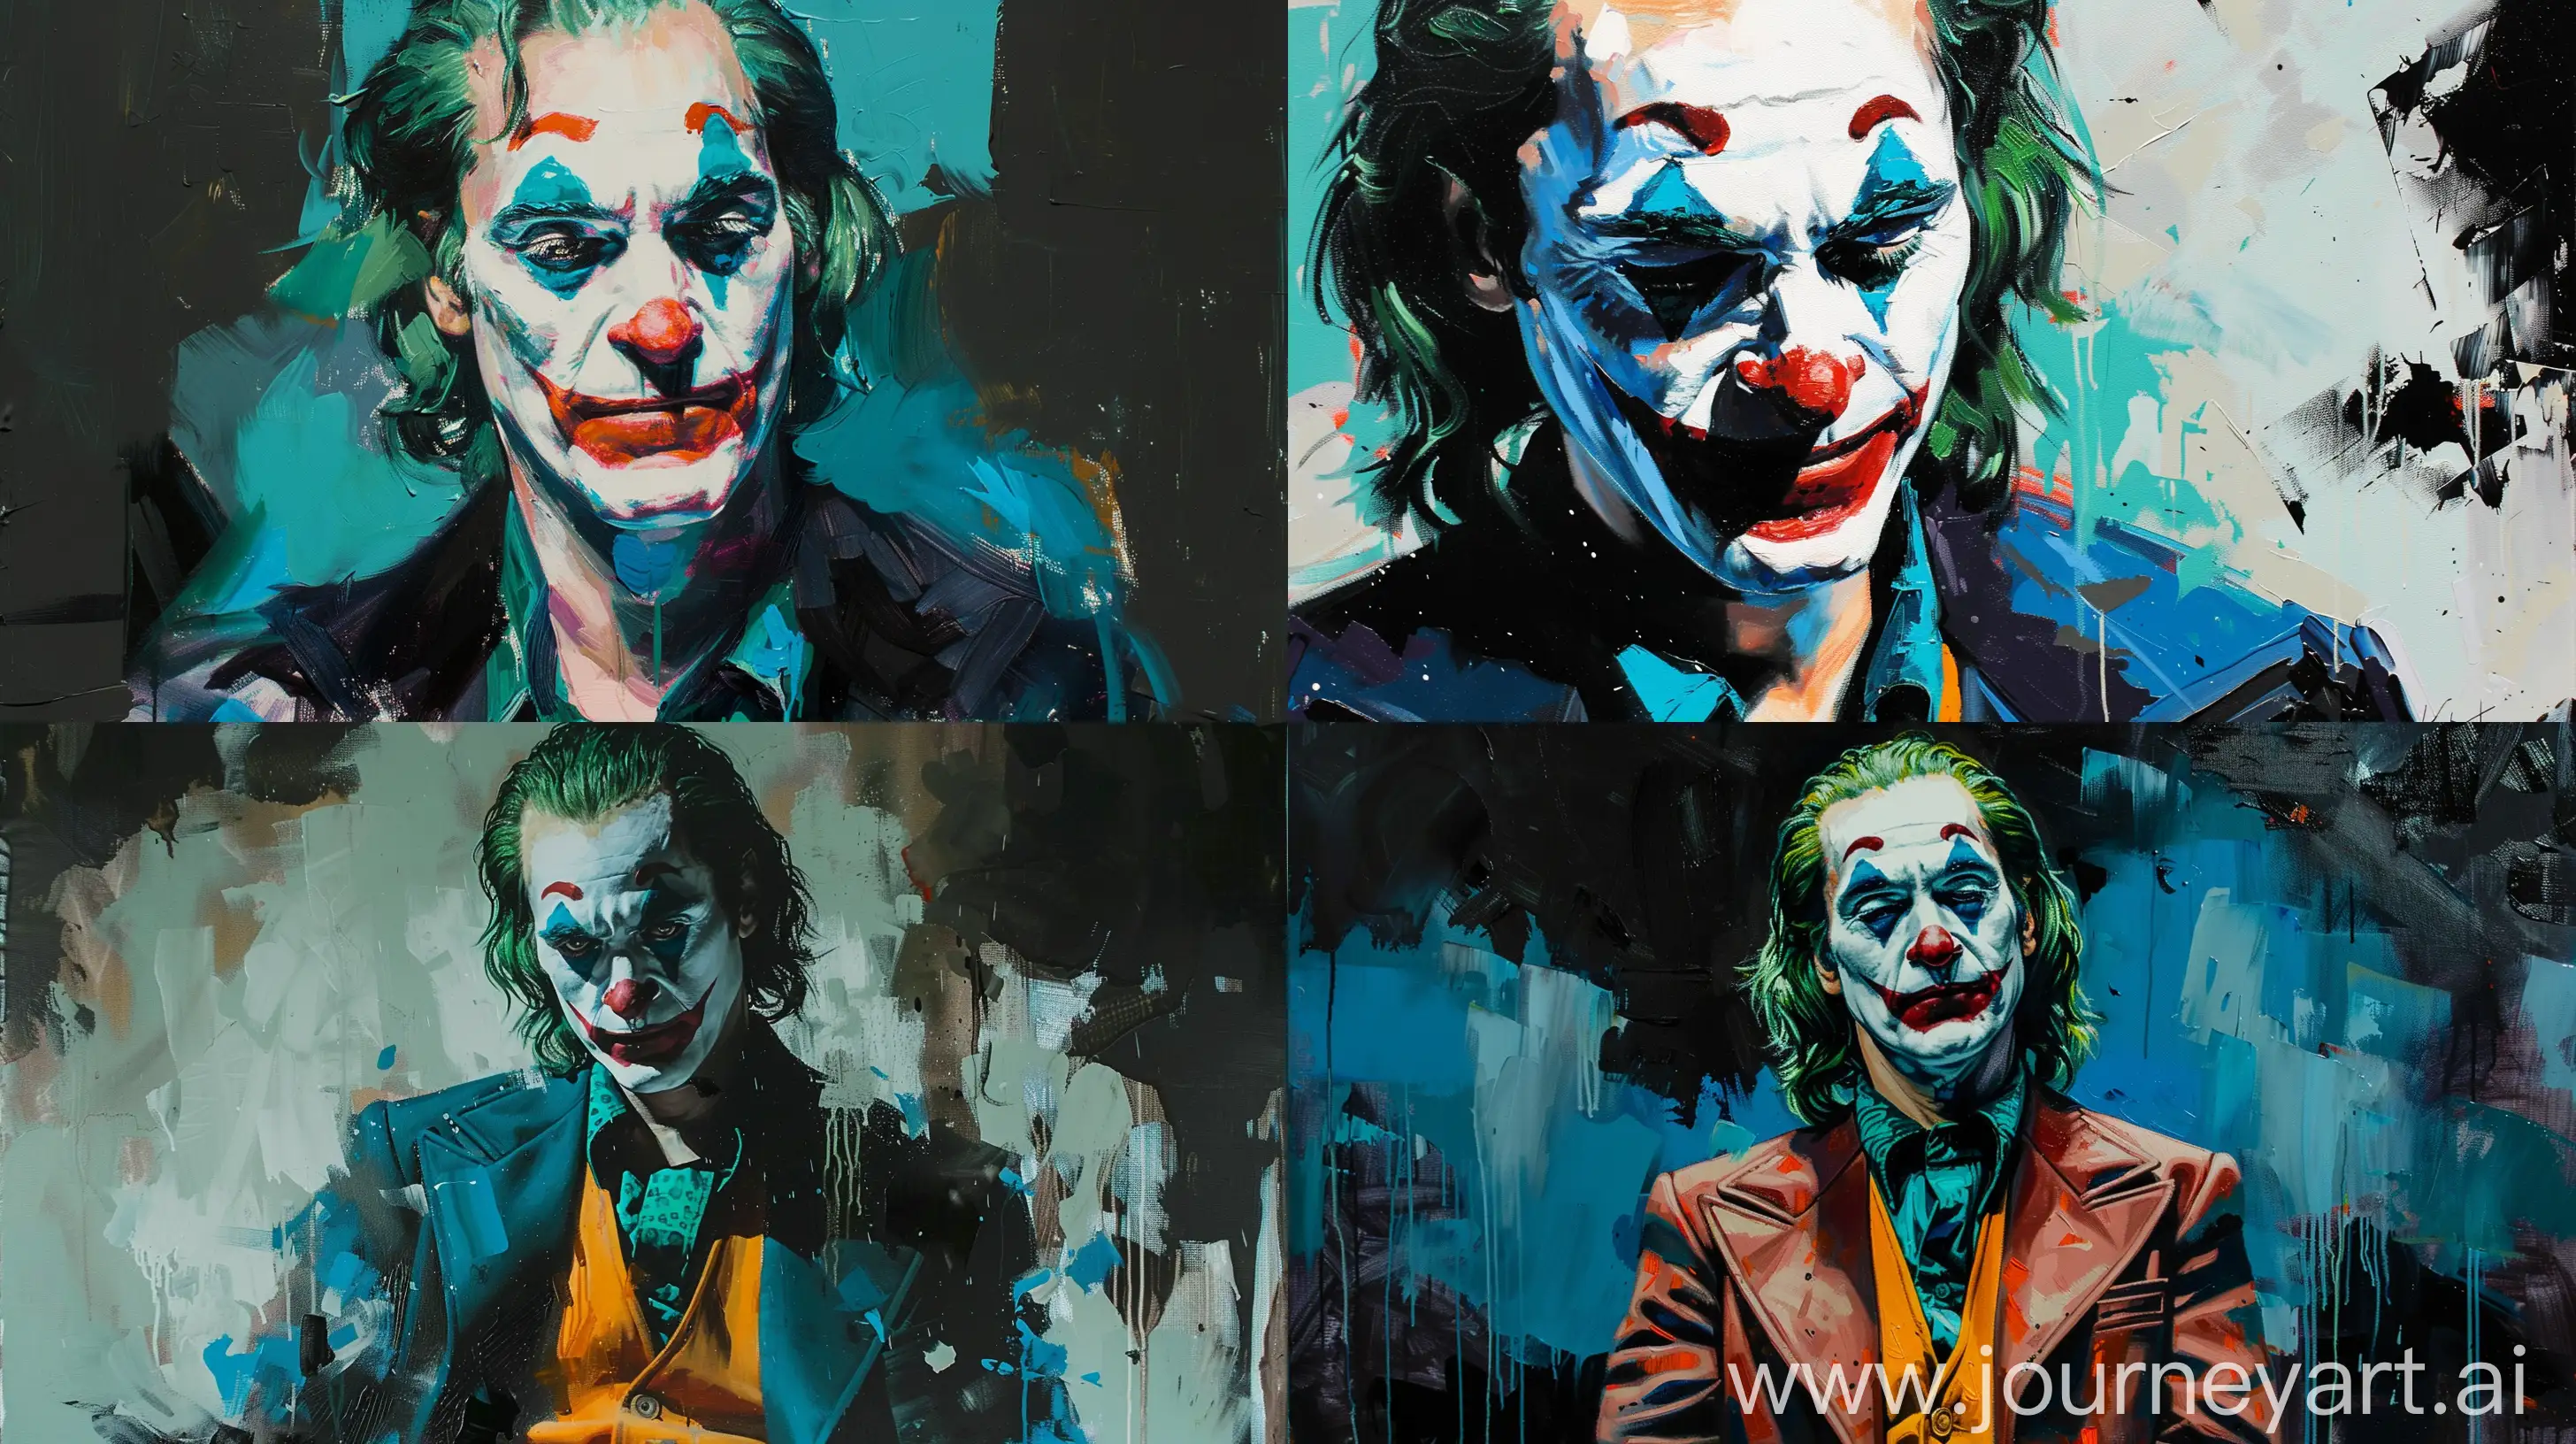 Joaquin-Phoenix-Joker-Portrait-in-Star-Wars-Style